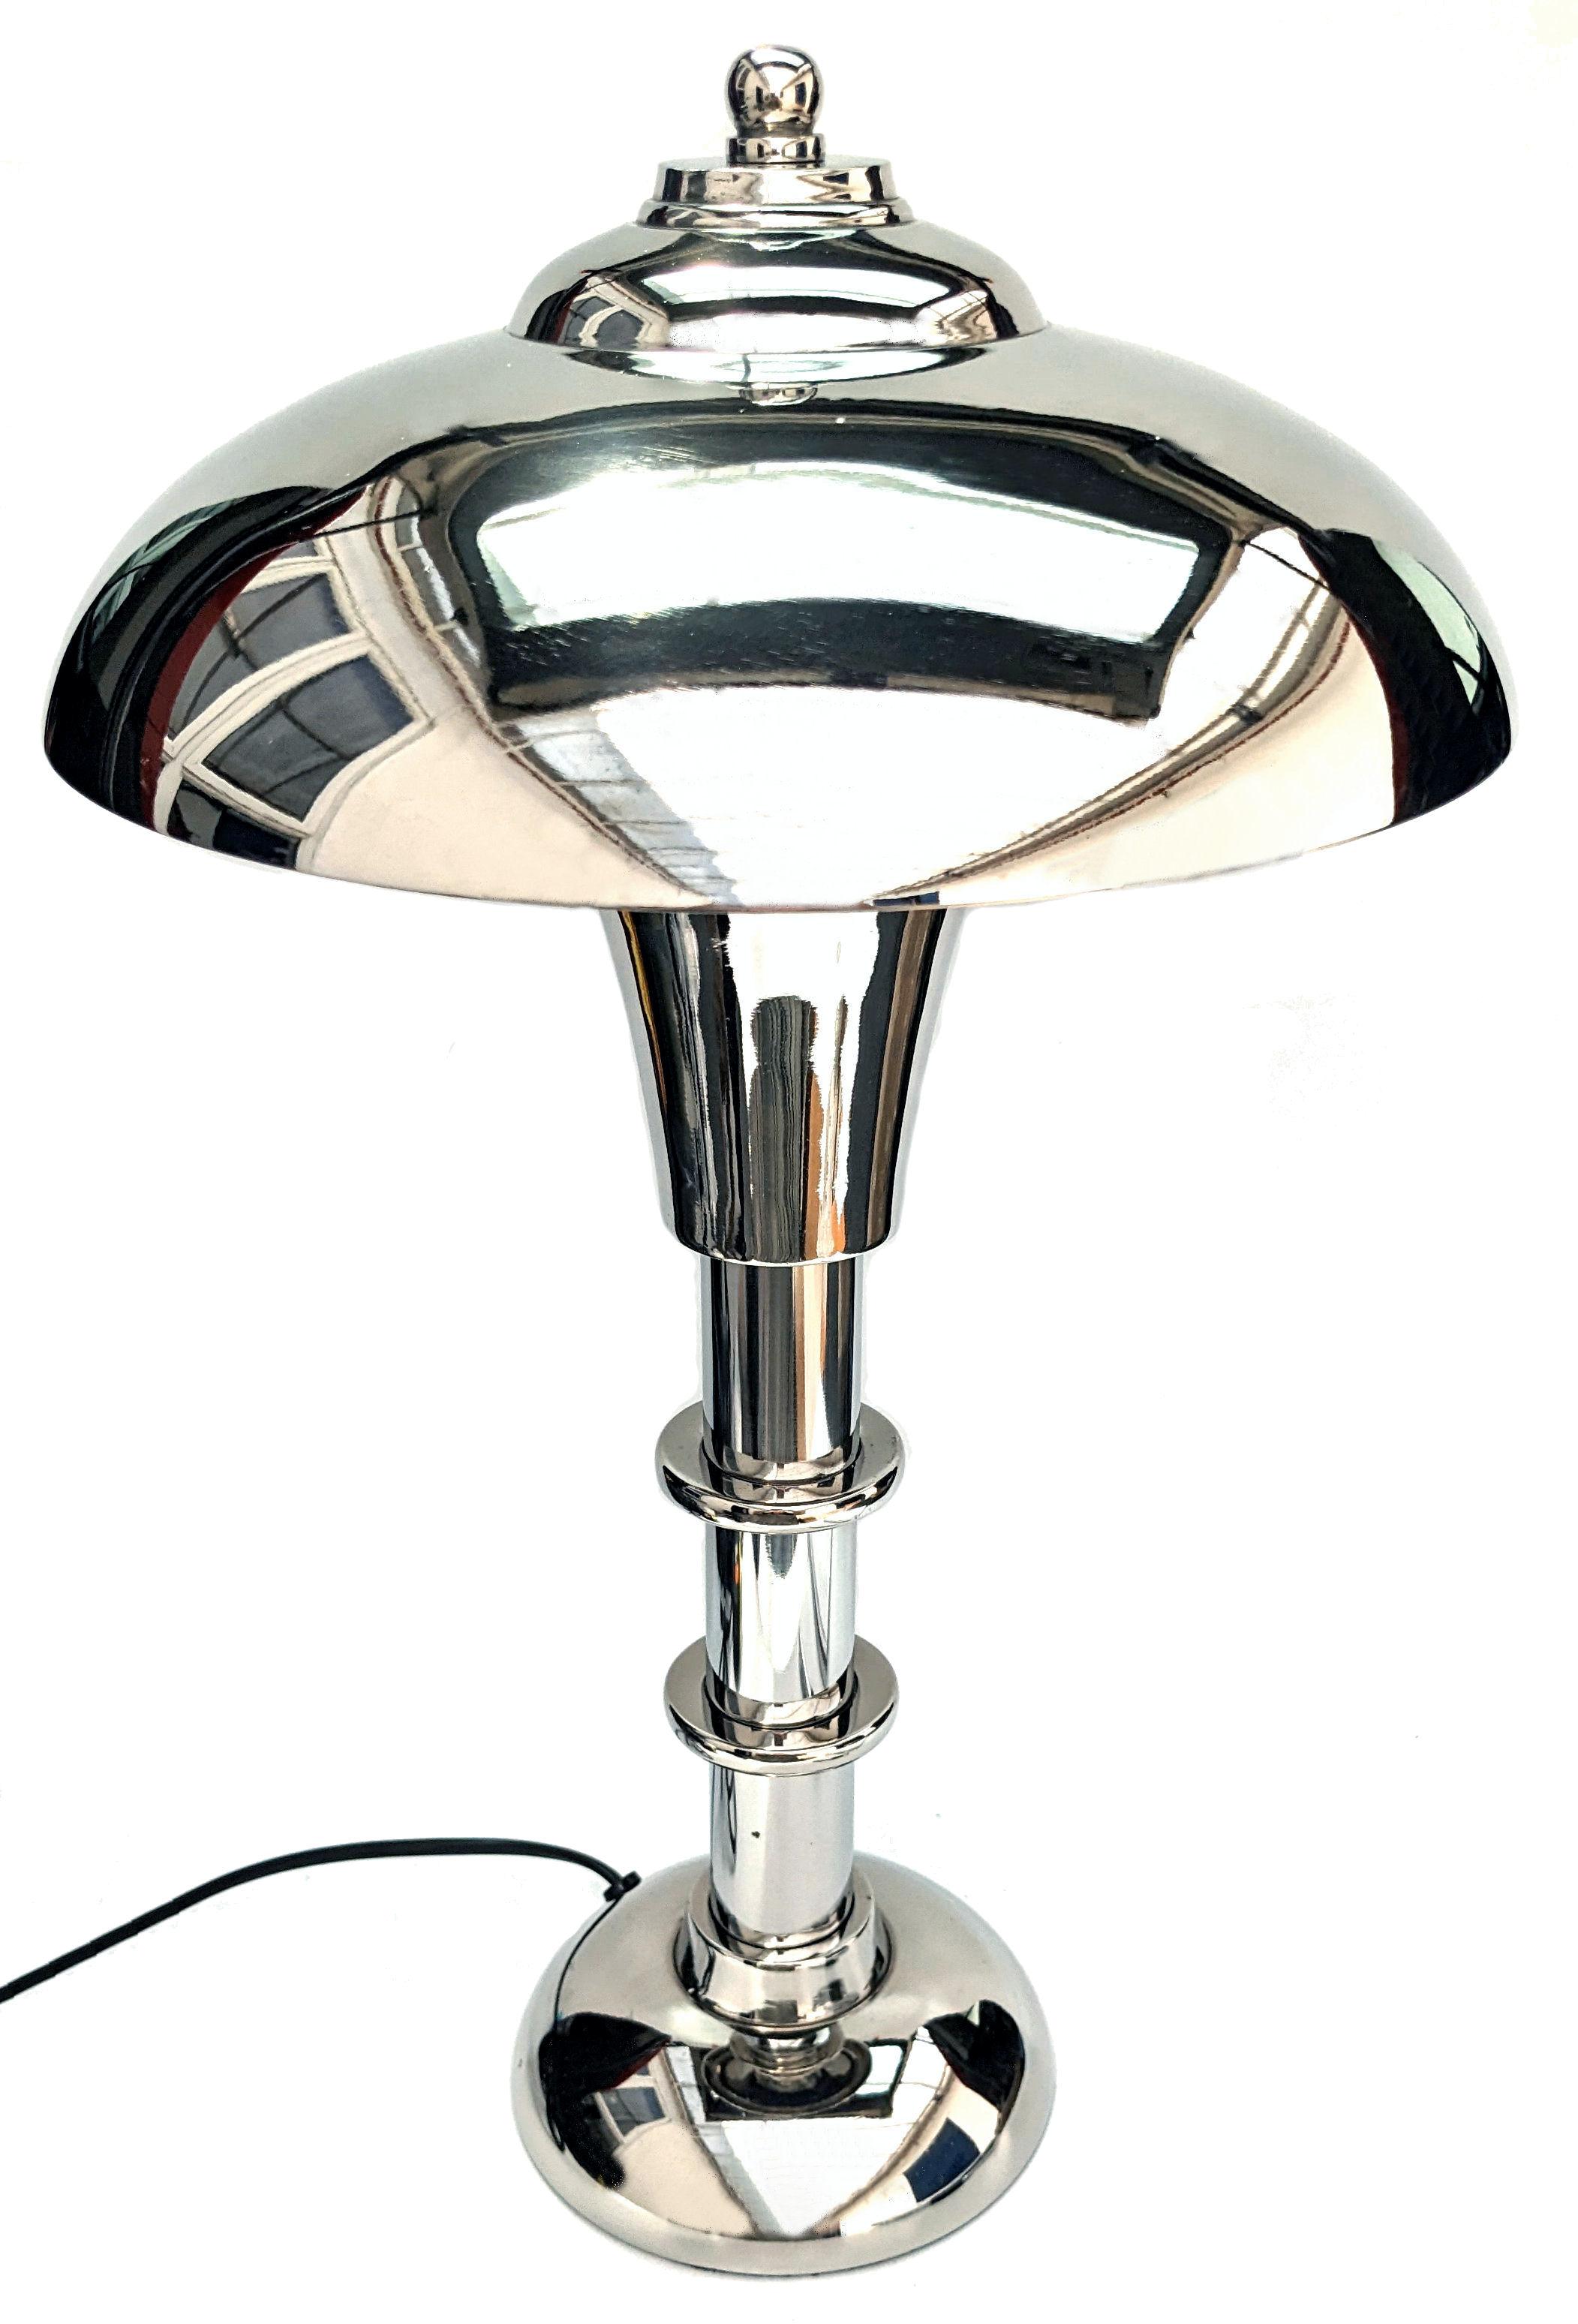 C'est l'occasion parfaite d'acquérir une paire de lampes de table uniques de style High Style Deco, qui ne sont pas produites en série, mais faites à la main et polies à la main à un niveau extrêmement élevé au Royaume-Uni, en très petite quantité,